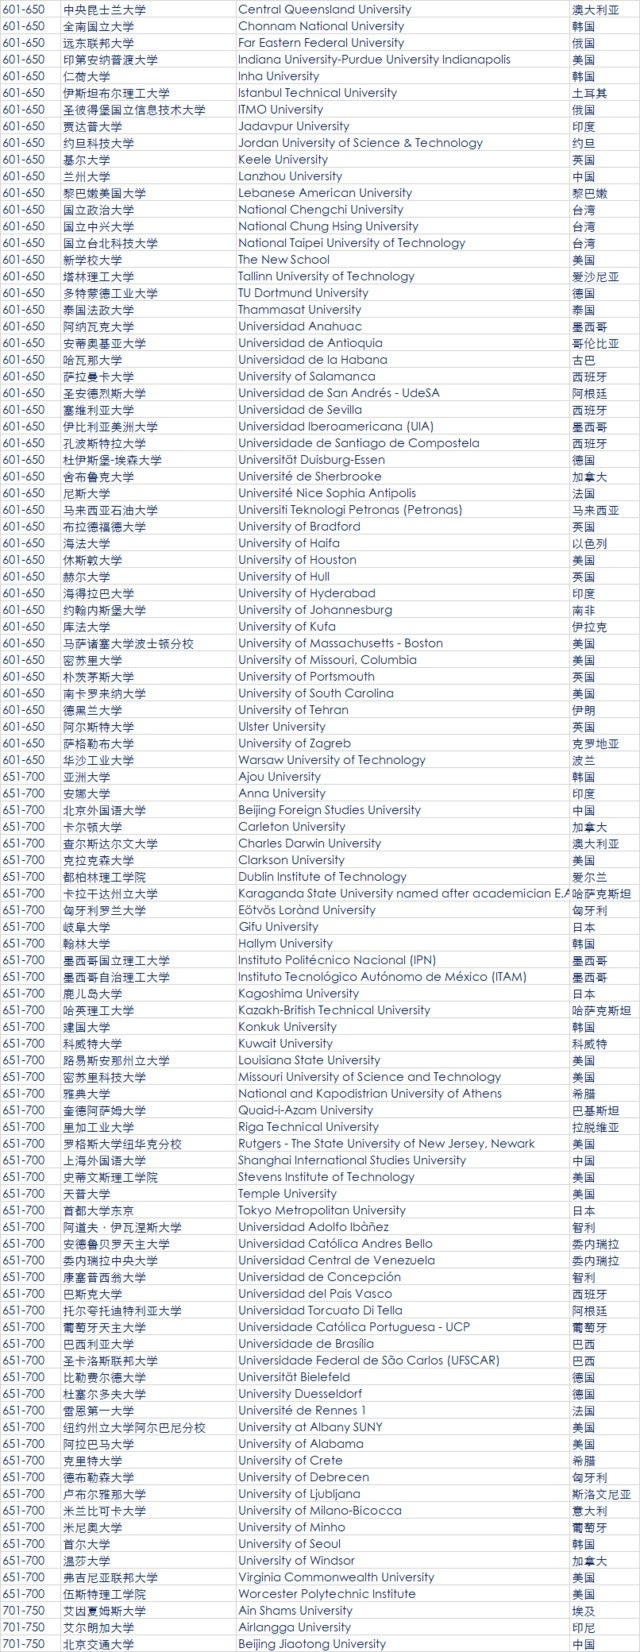 2018年QS世界大学排名发布 中国大陆6所高校进百强7